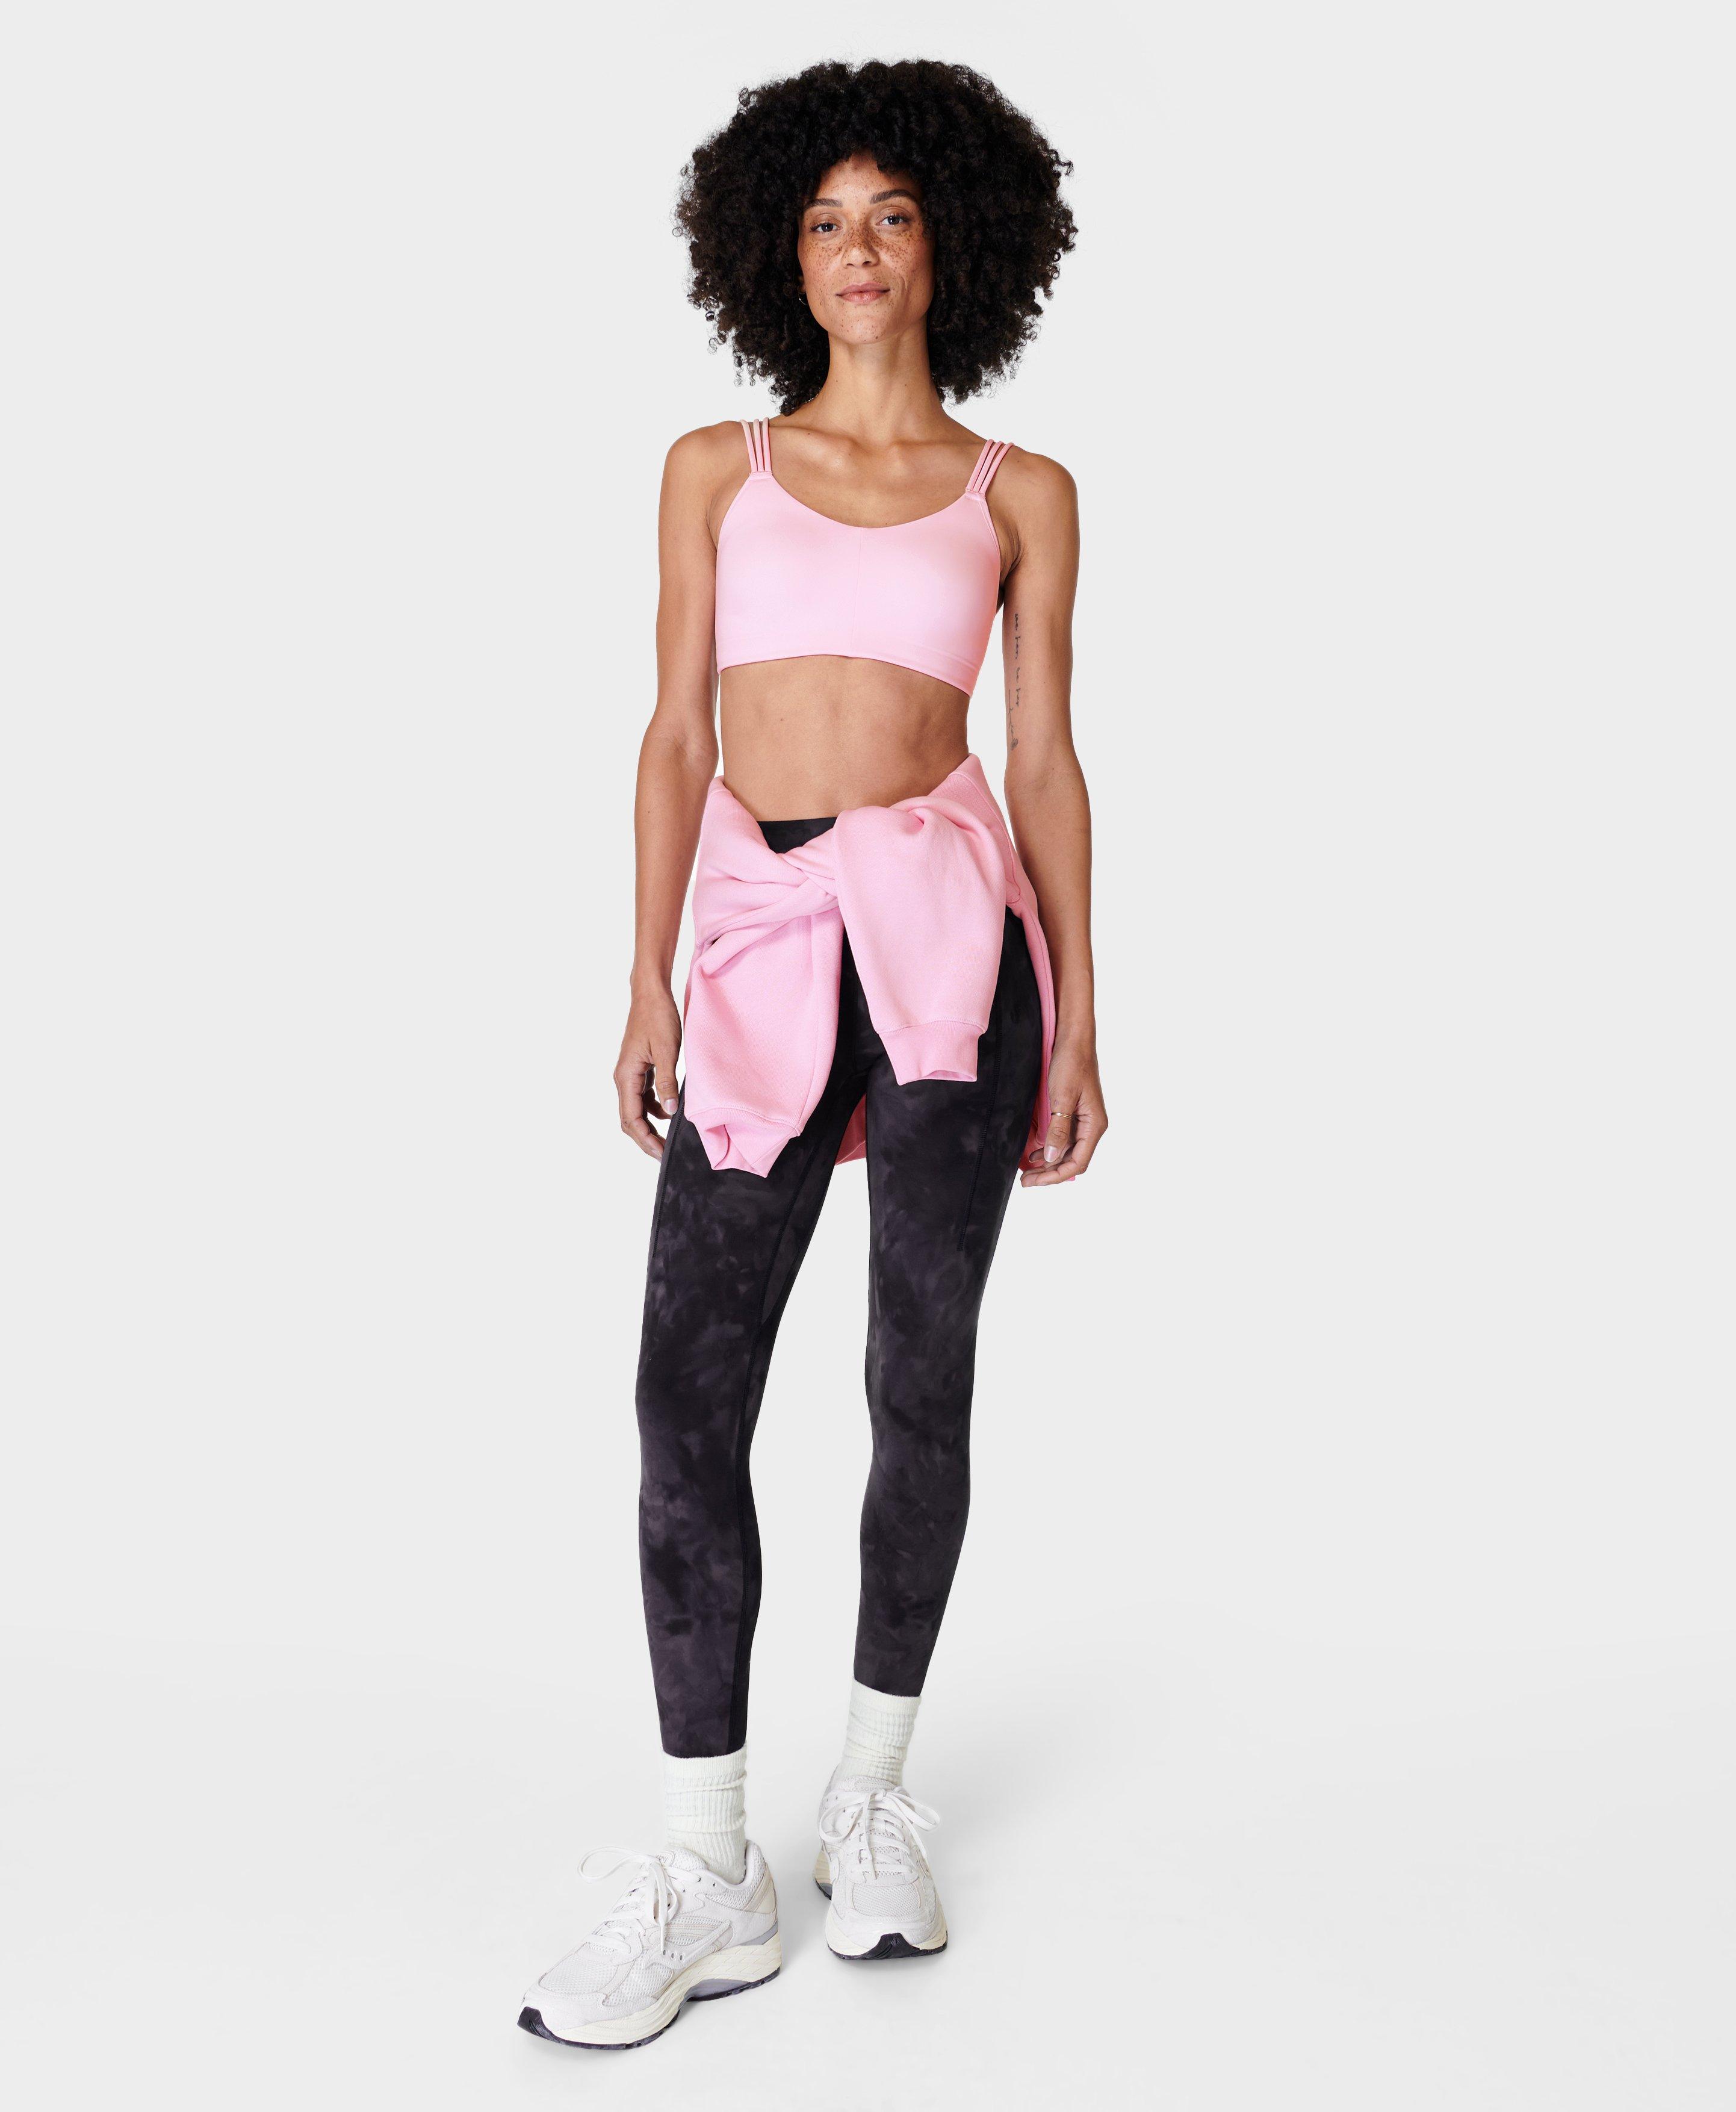 Sweaty Betty Stamina Workout Bra Women's Size XS Dk Pink Yoga Sports Bra  $44 Nwt 